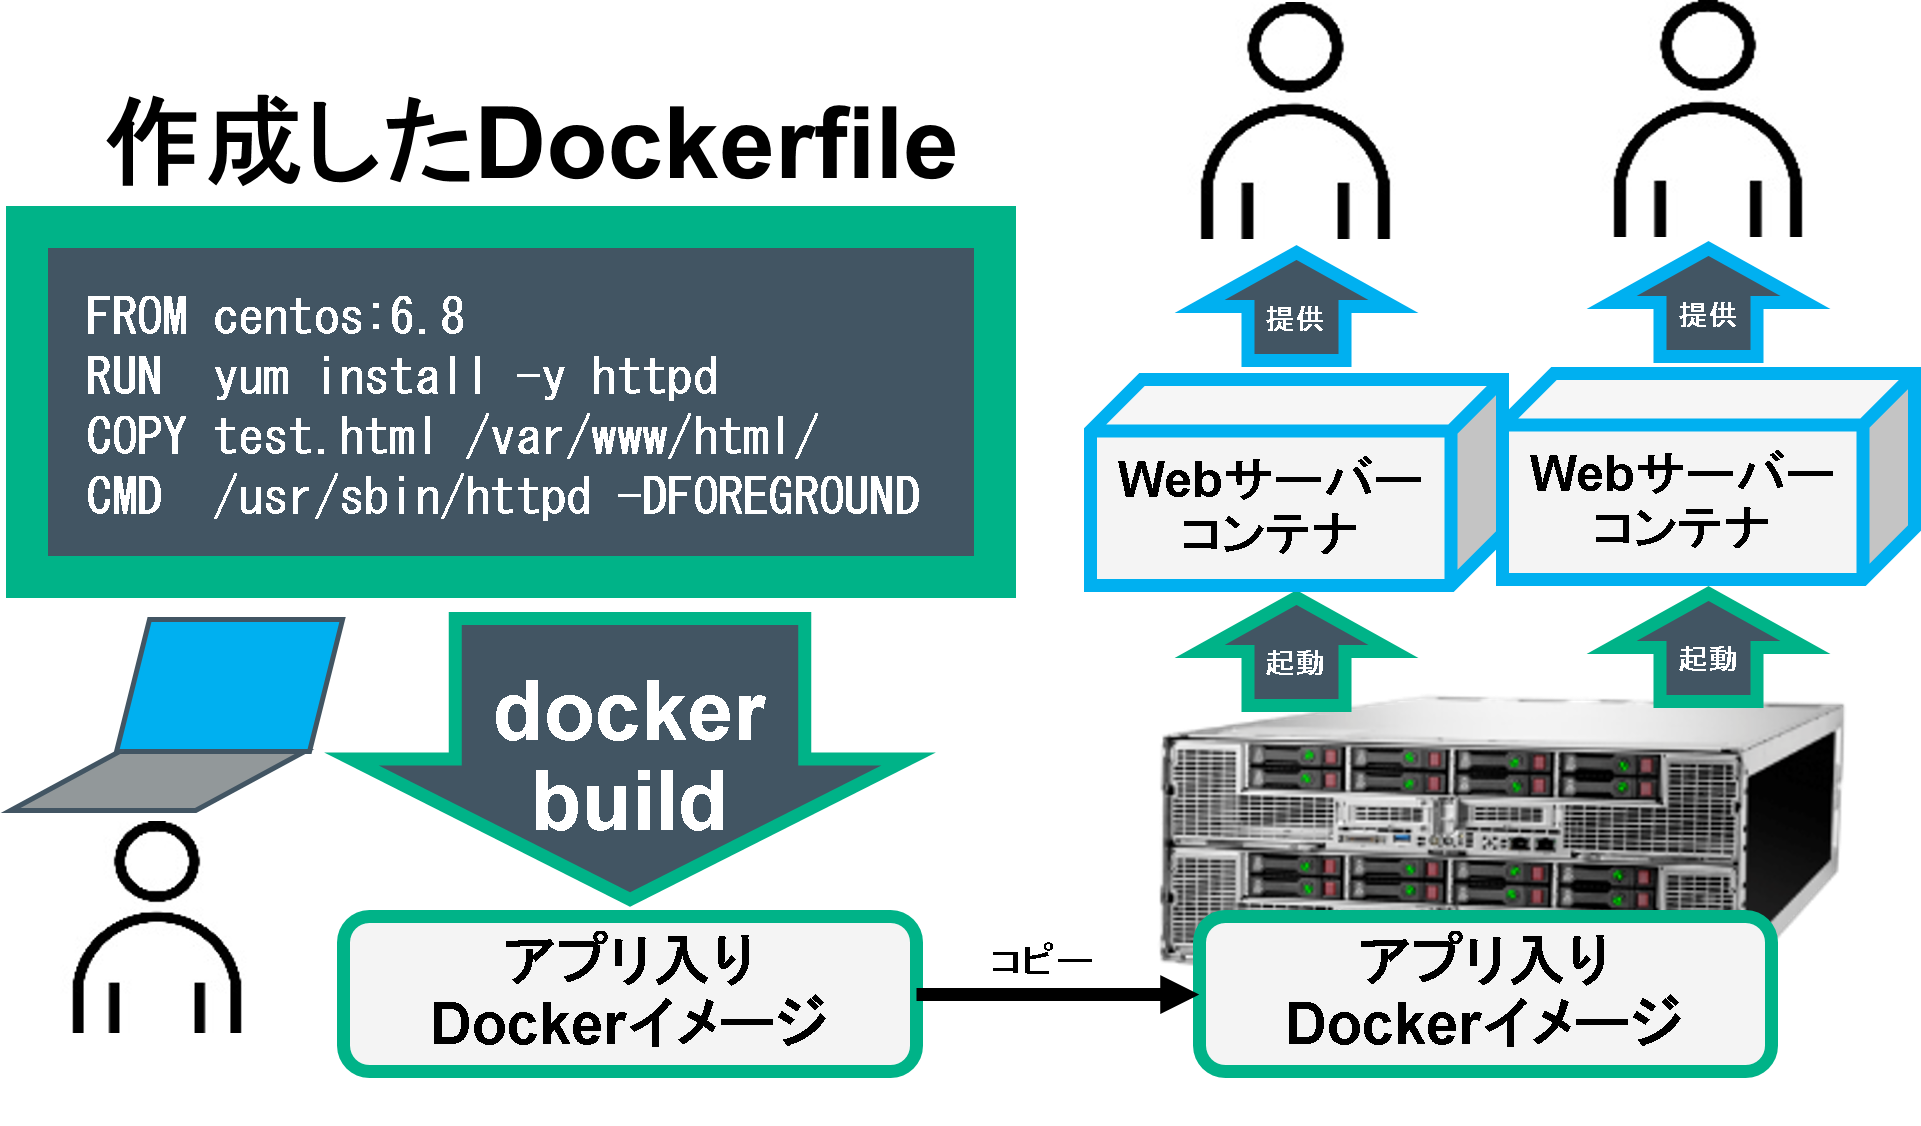 図. Dockerエンジンが稼働するホストOS上で、「docker build」というビルド用の命令により、Dockerfileが読み込まれ、アプリ入りのDockerイメージが生成される。アプリ入りのDockerイメージからDockerコンテナを複数起動し、複数ユーザーで利用できる